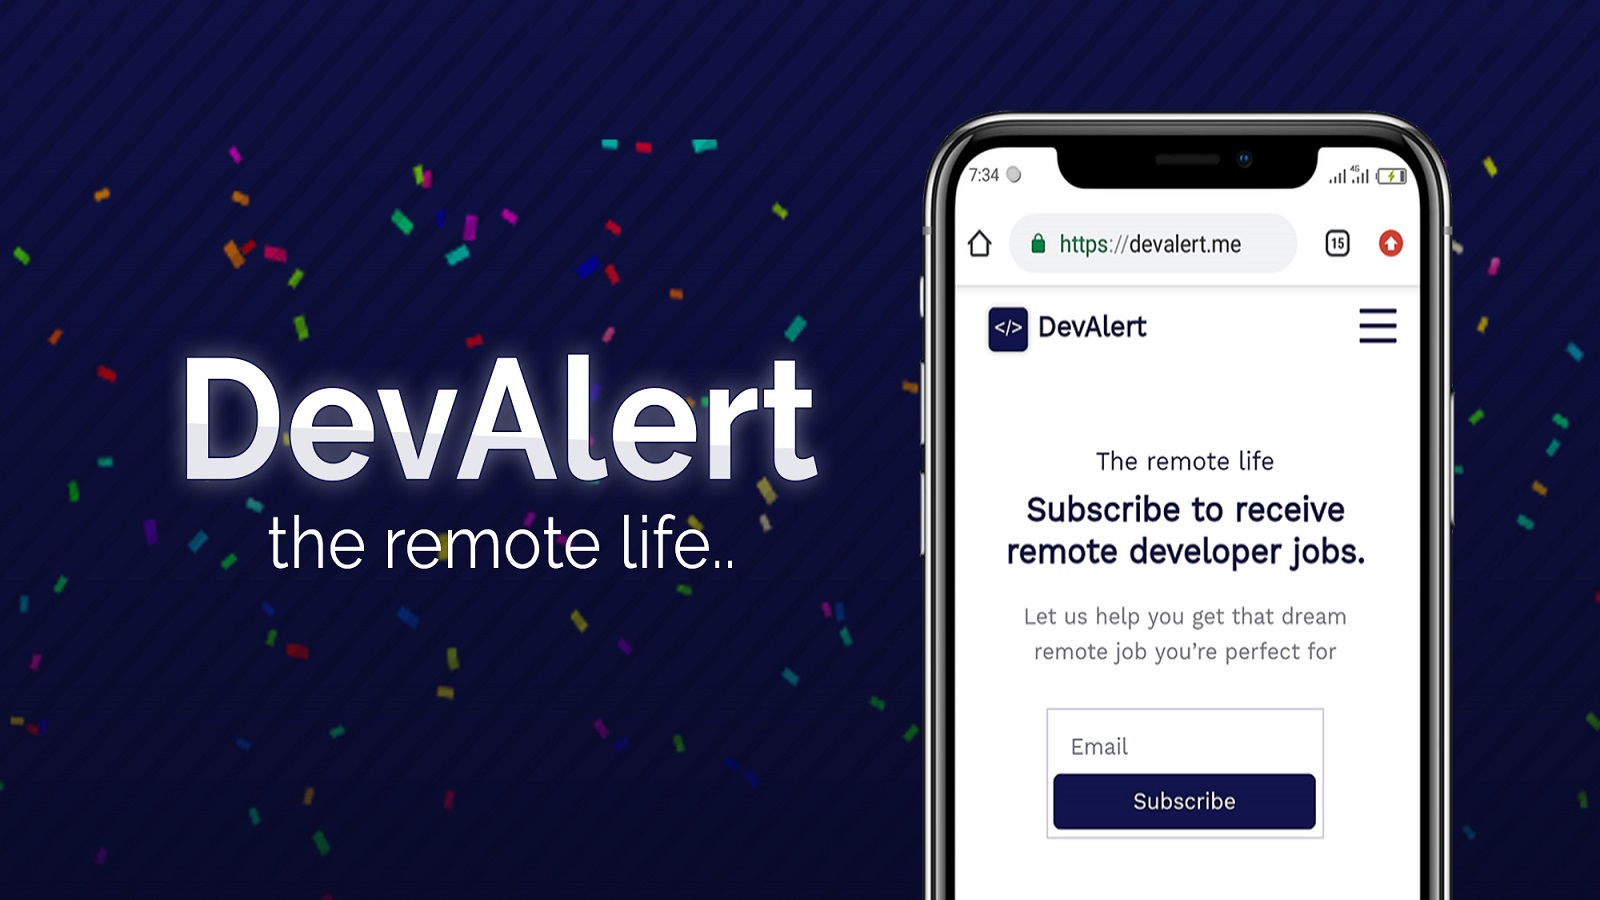 Find detailed information about DevAlertMe